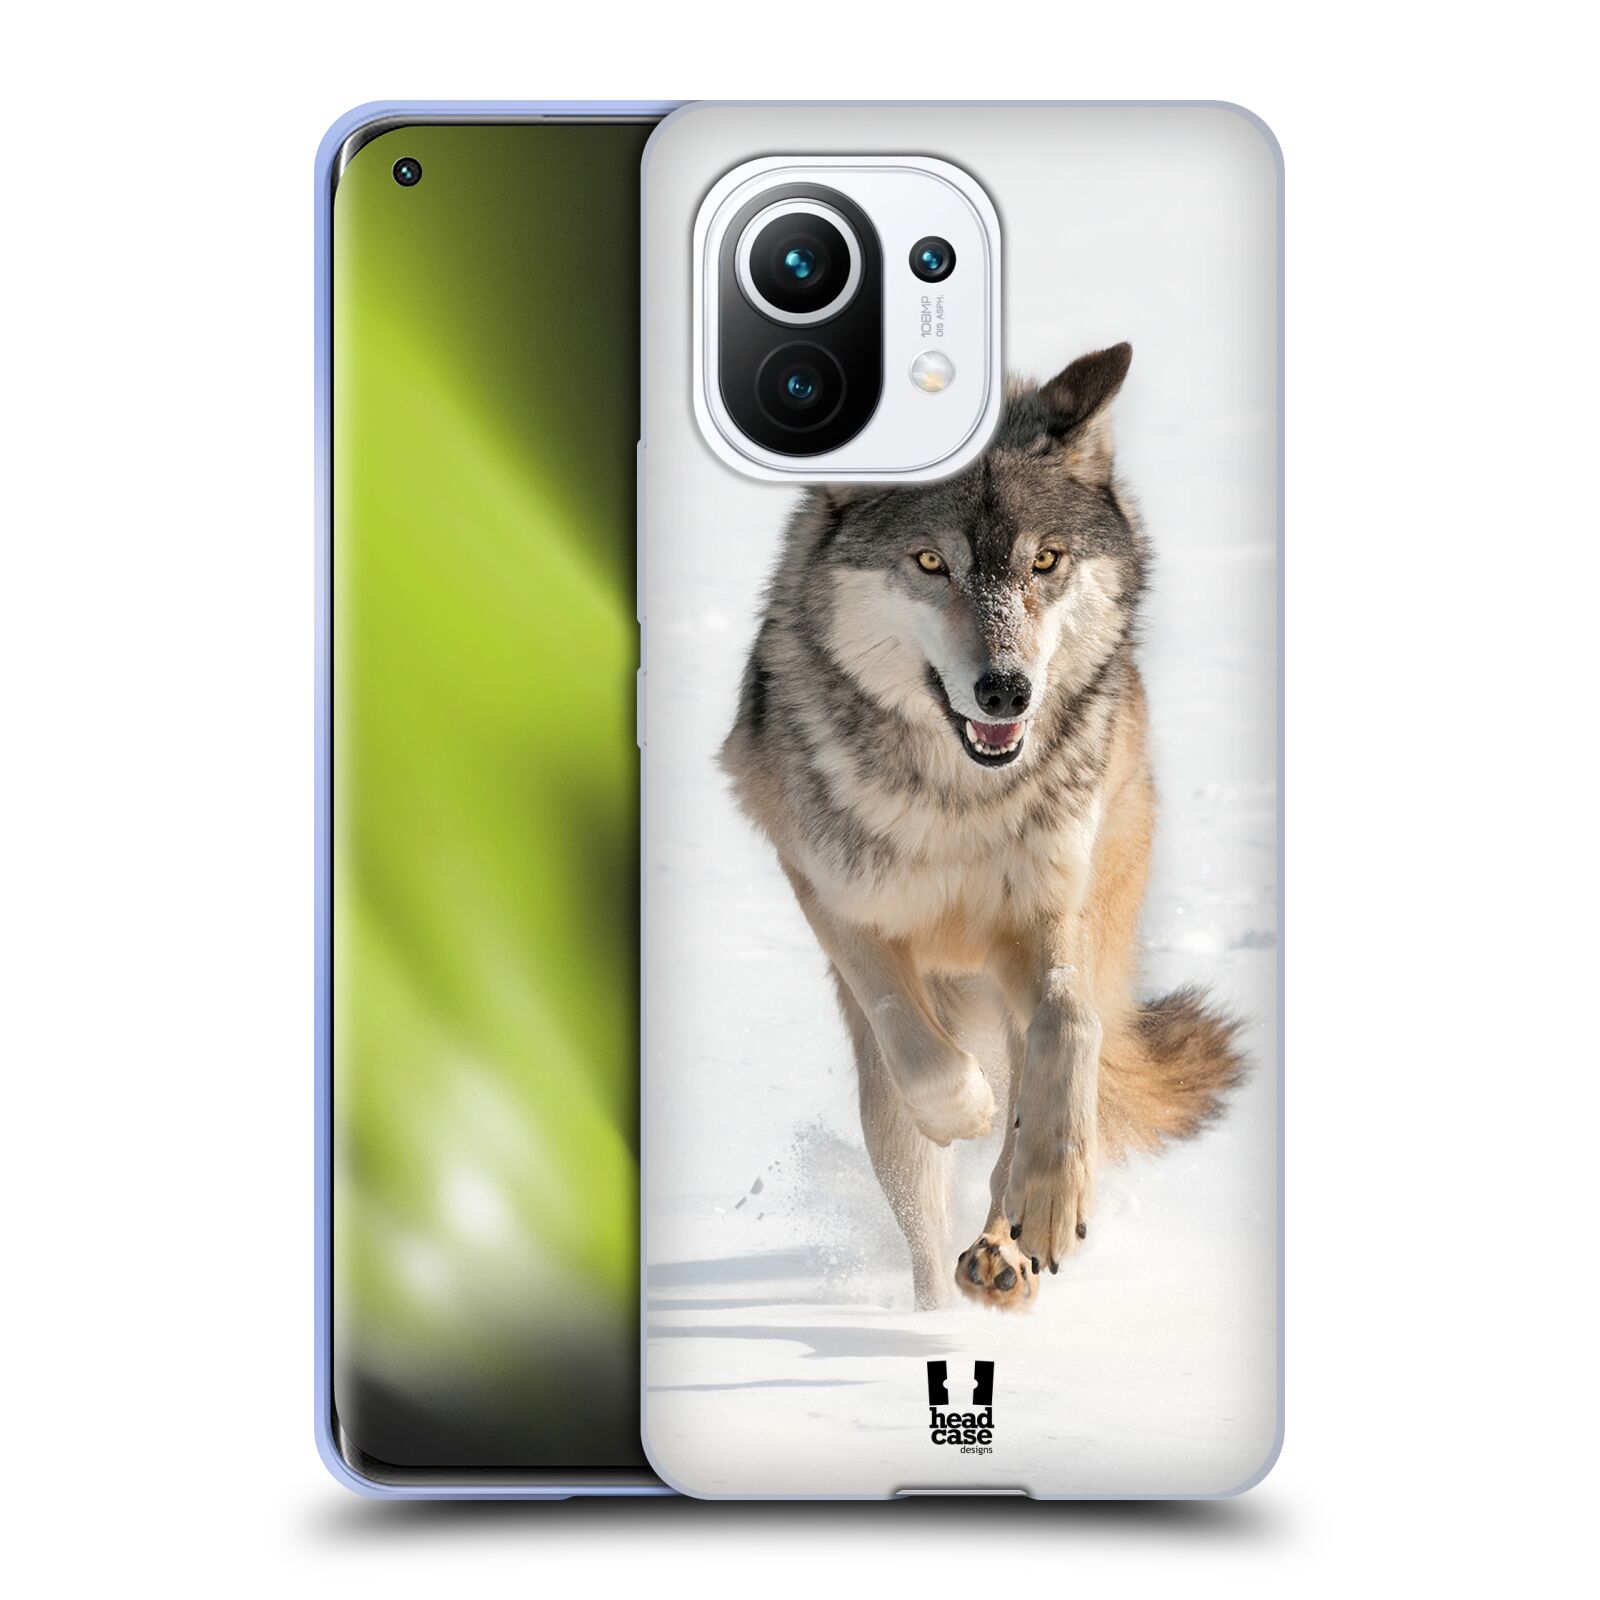 Plastový obal HEAD CASE na mobil Xiaomi Mi 11 vzor Divočina, Divoký život a zvířata foto BĚŽÍCÍ VLK